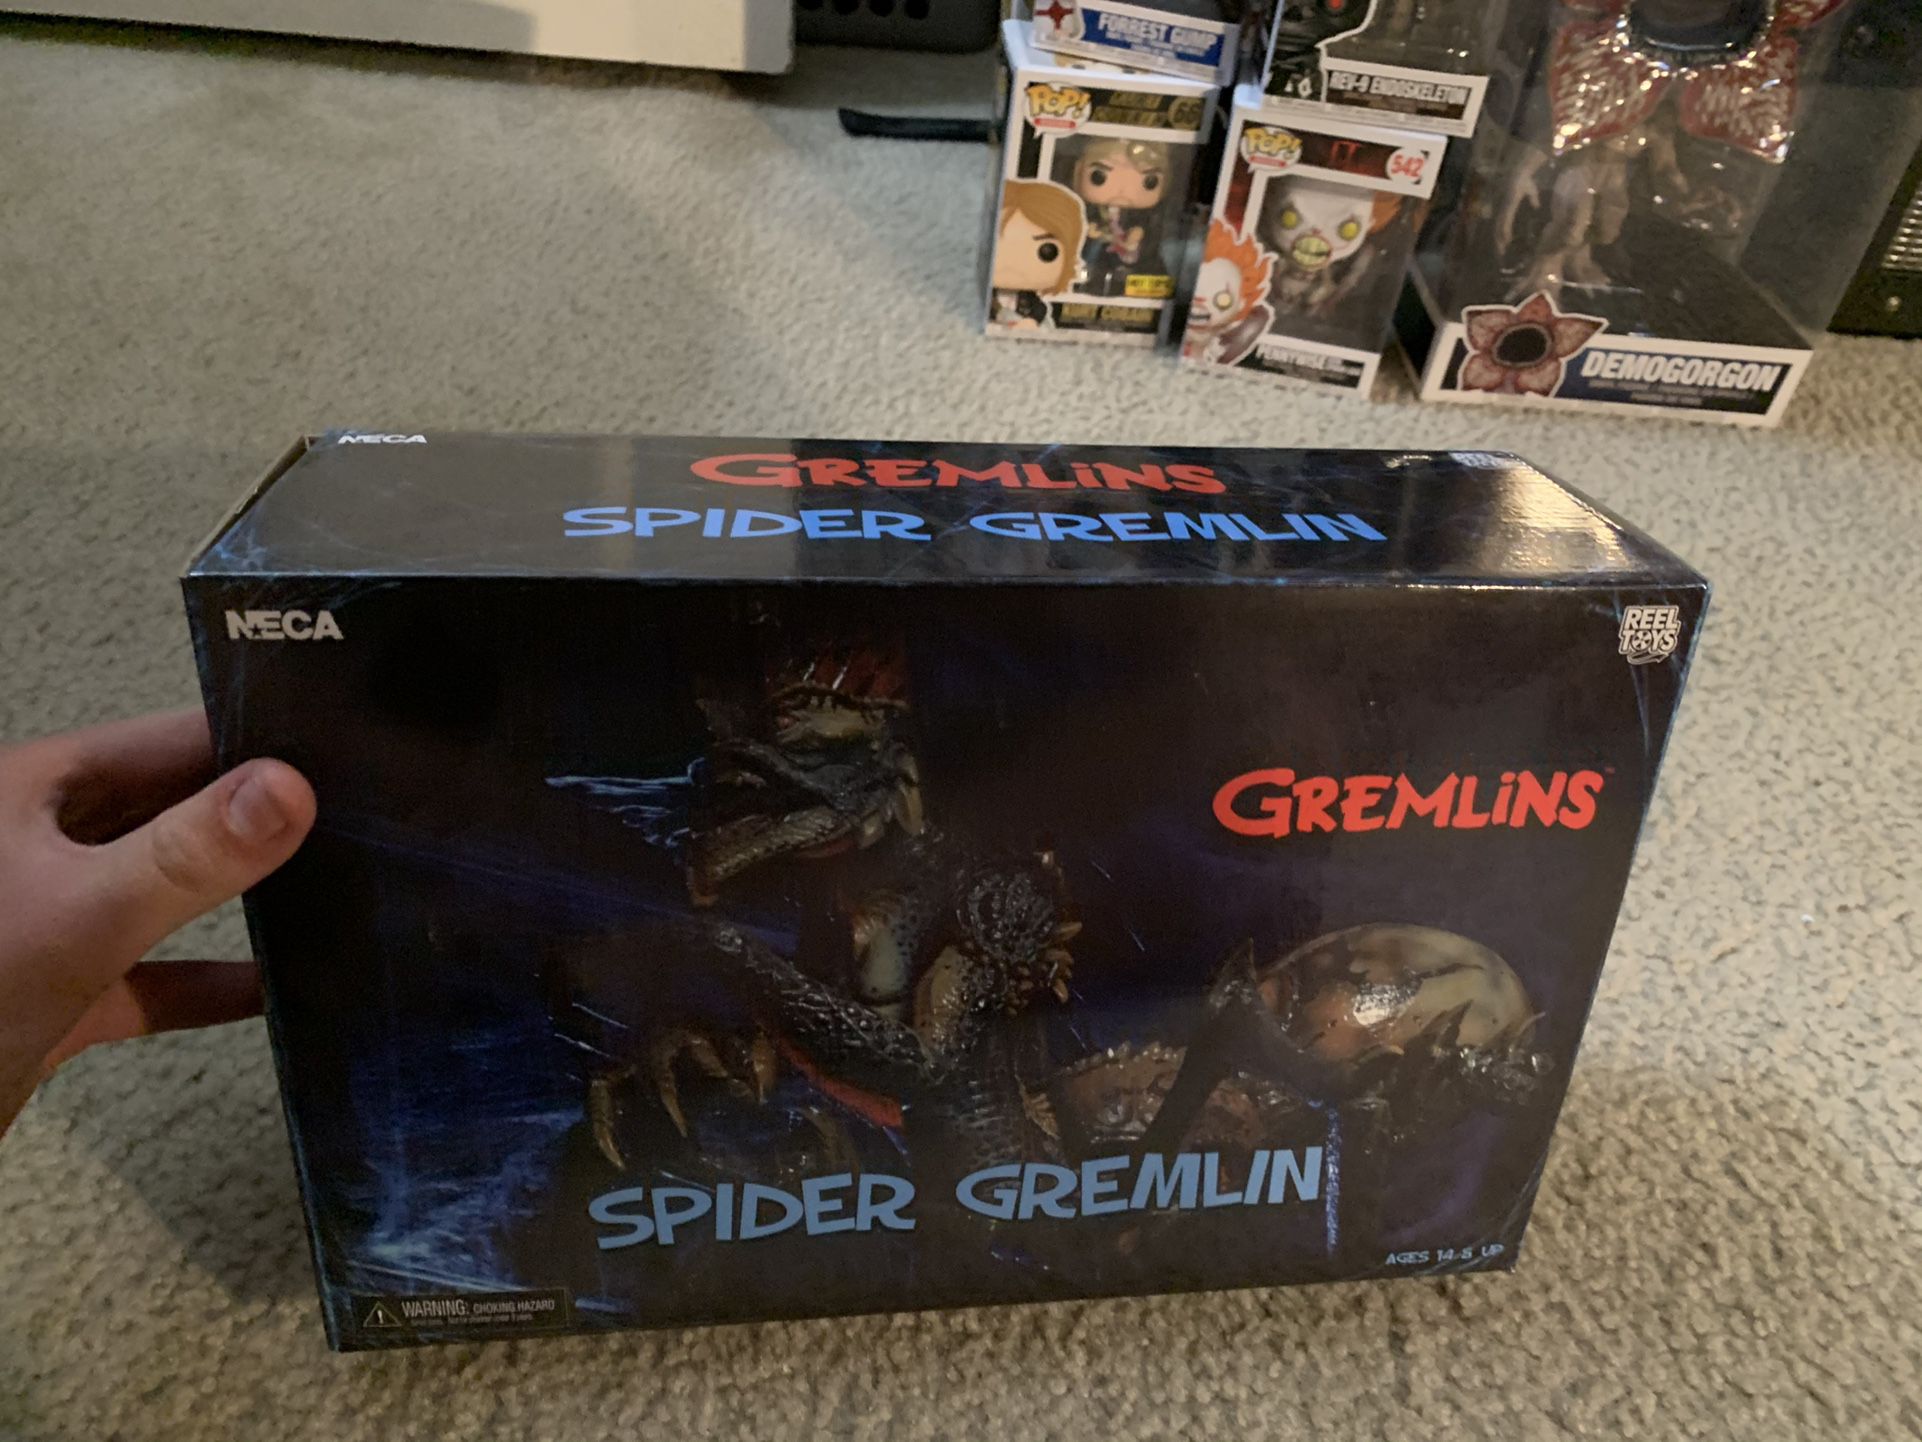 Neca Spider Gremlin